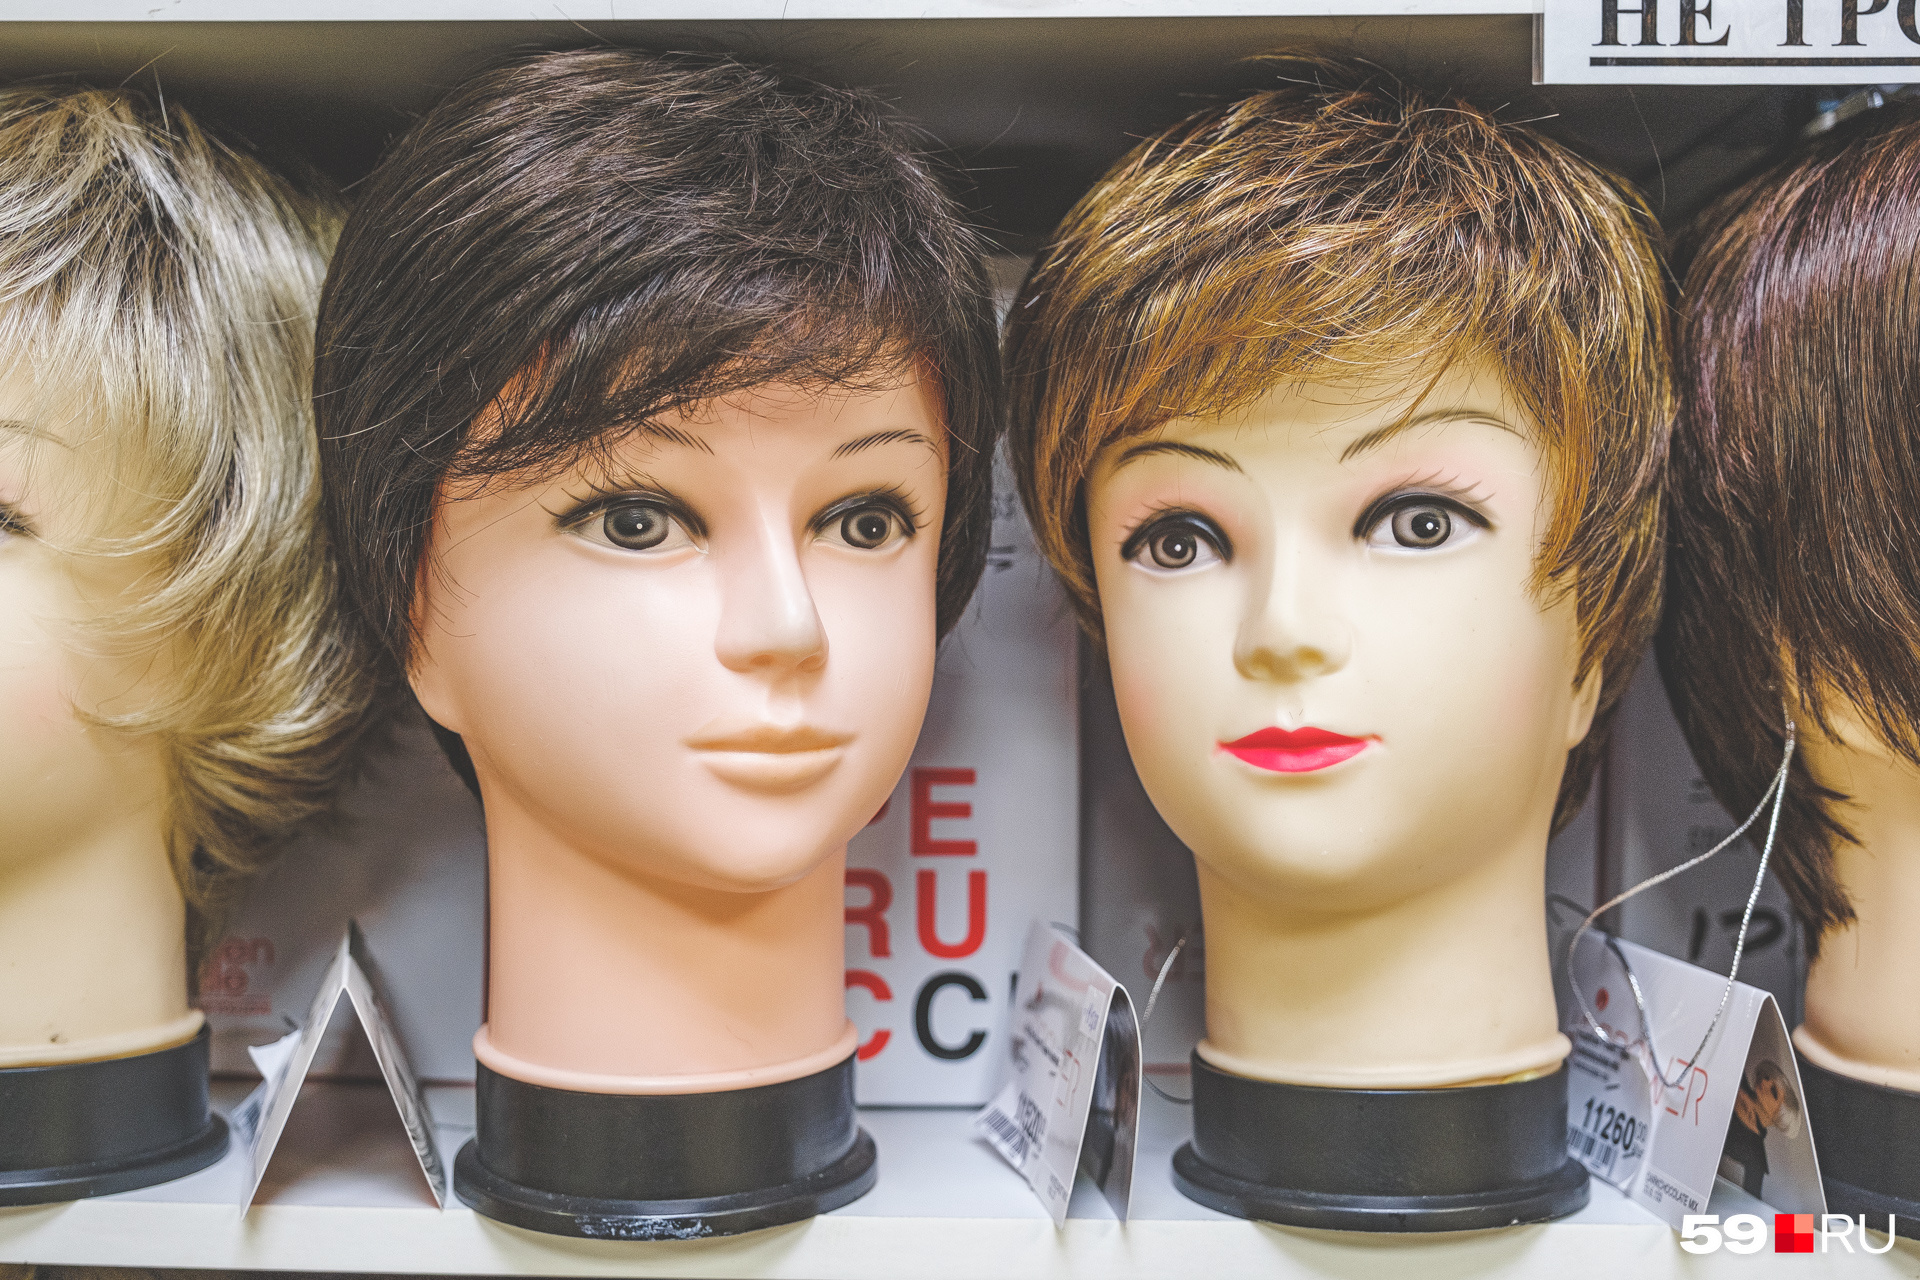 Пример того, как одна и та же модель парика смотрится по-разному благодаря отличающемуся цвету волос